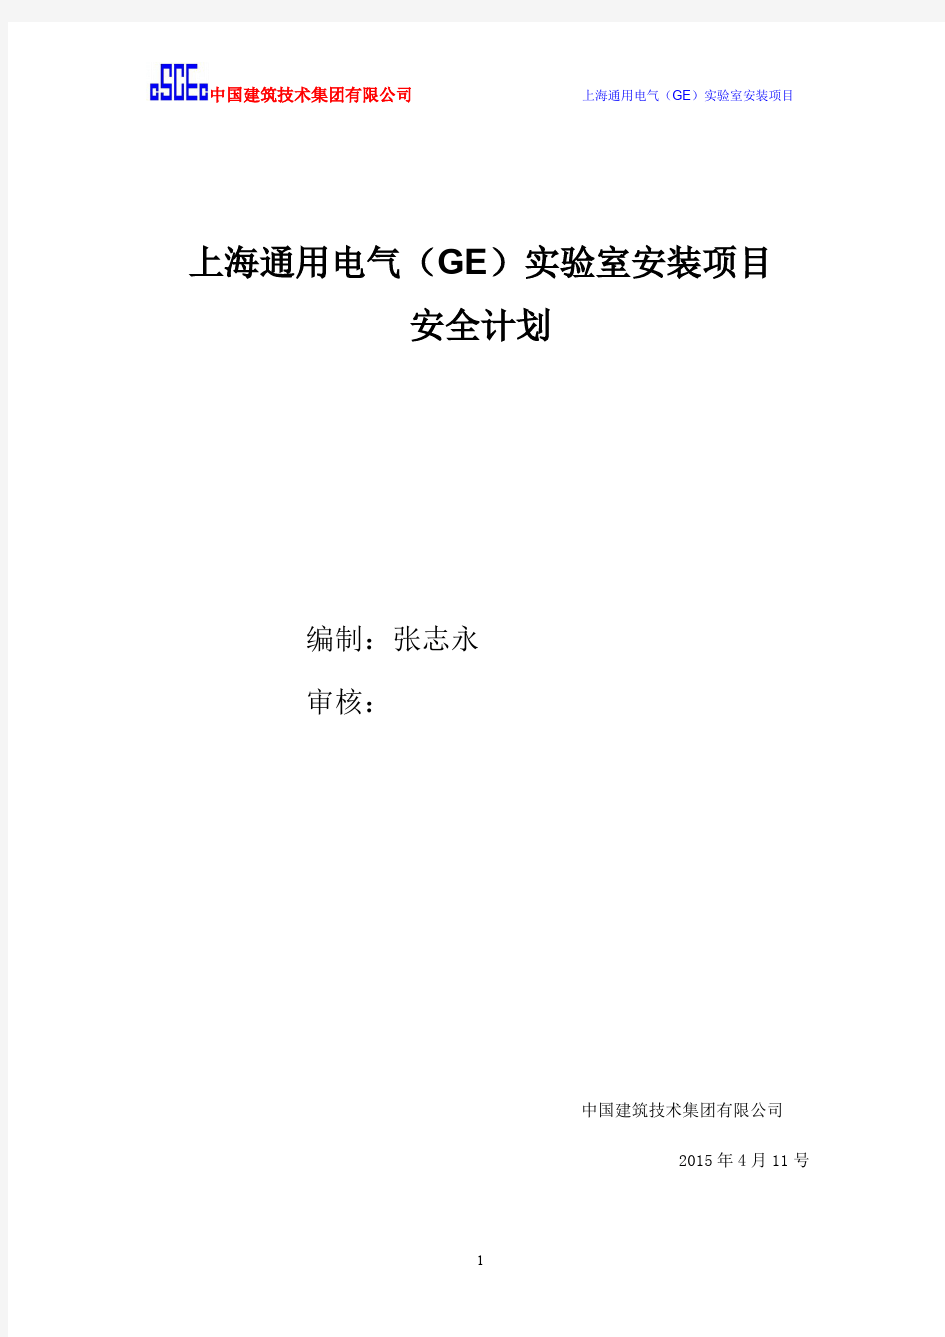 上海通用电气(GE )实验室安装项目安全计划